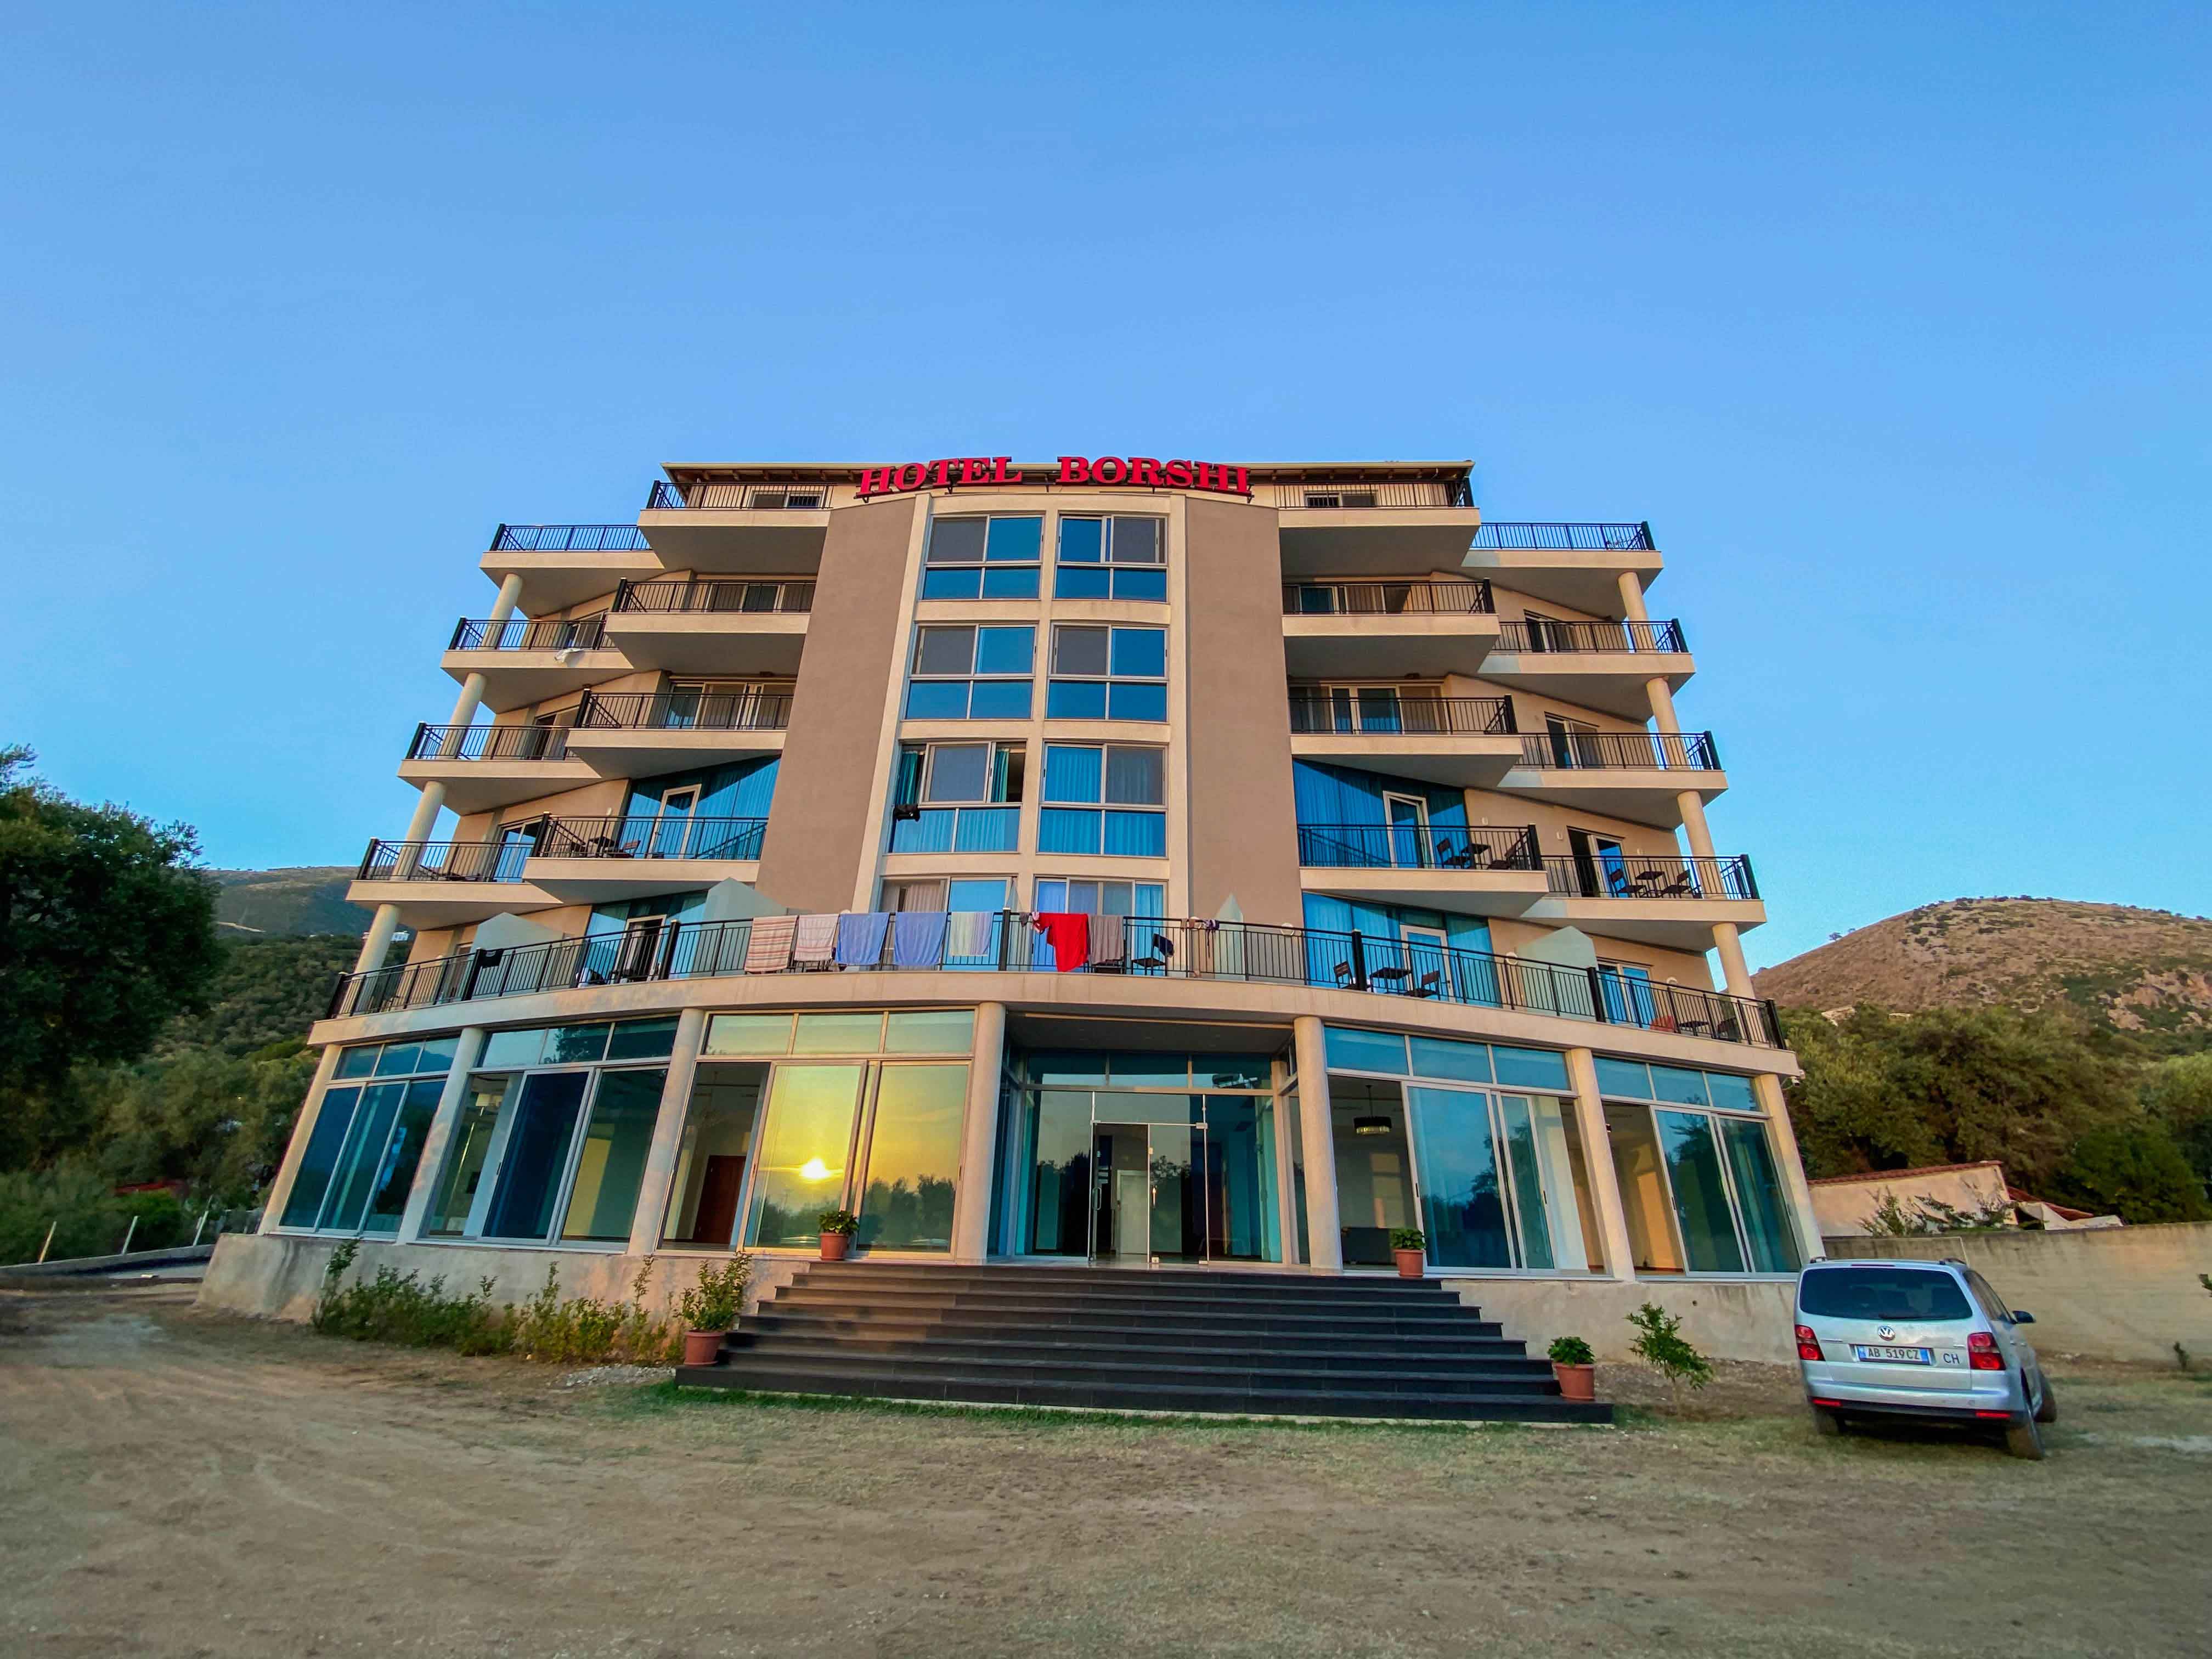 Hotel Borshi është një hotel me 3-yje, i cili ndodhet jo më shumë se 2 minuta larg bregdetit, 200 m larg Plazhit të Borshit, dhe 3 km larg plazhit të Qeparosë...